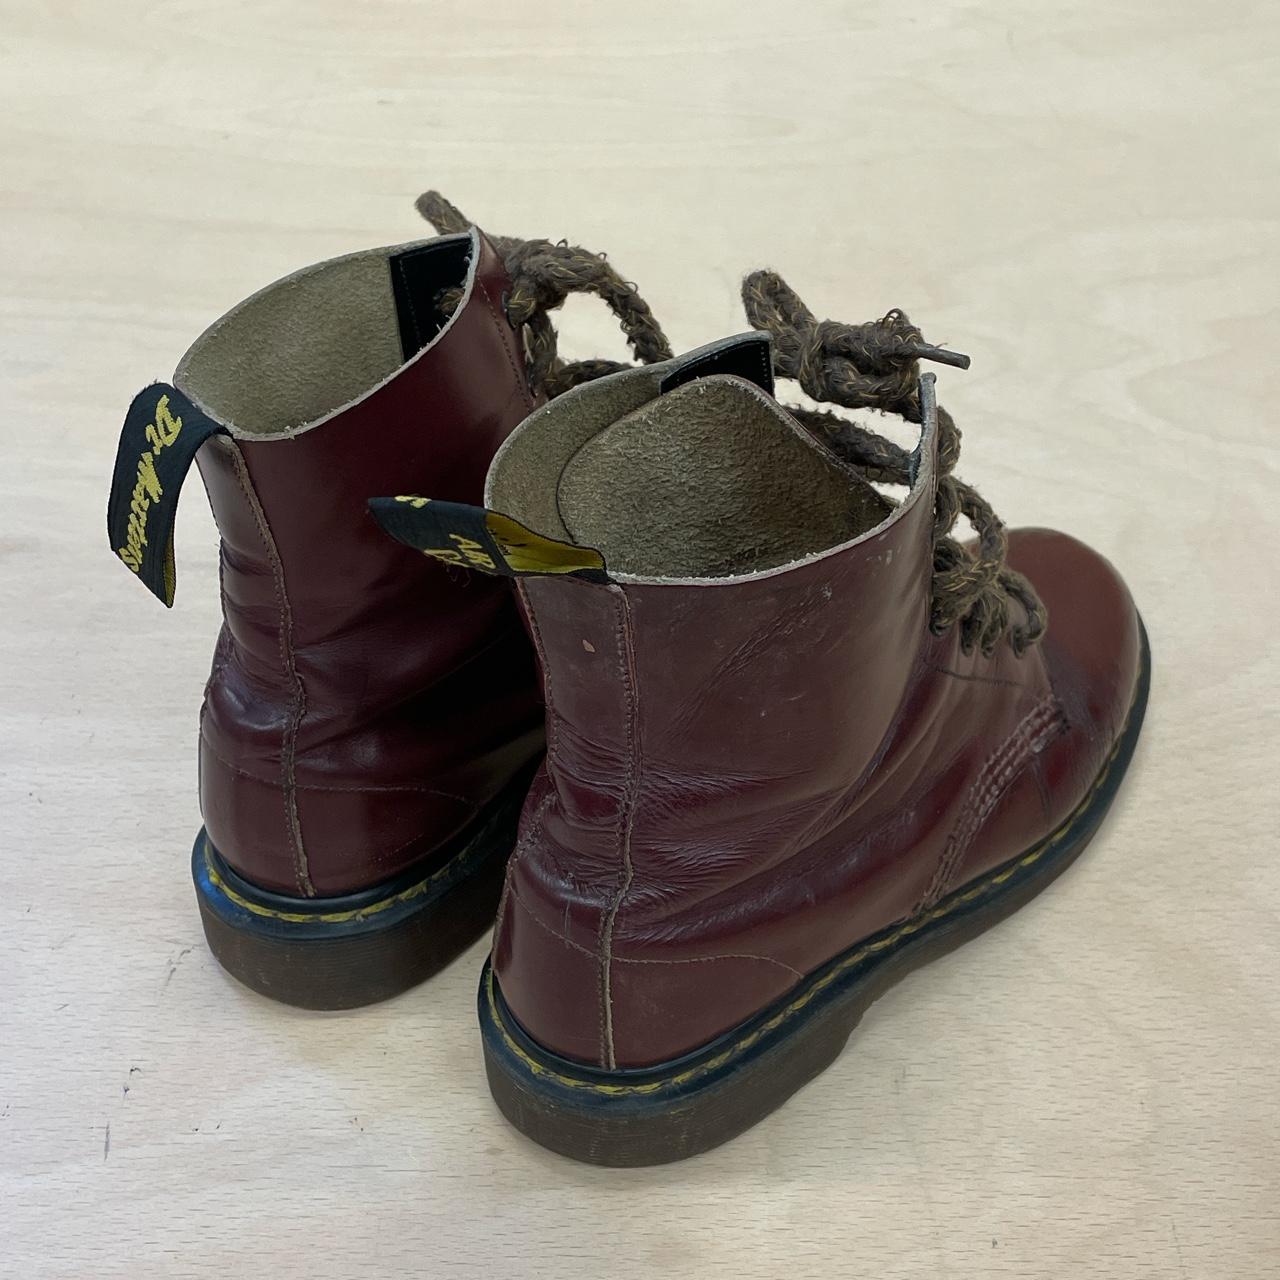 Vintage Dr. Martens 'Made In England' 7 Hole Boots... - Depop